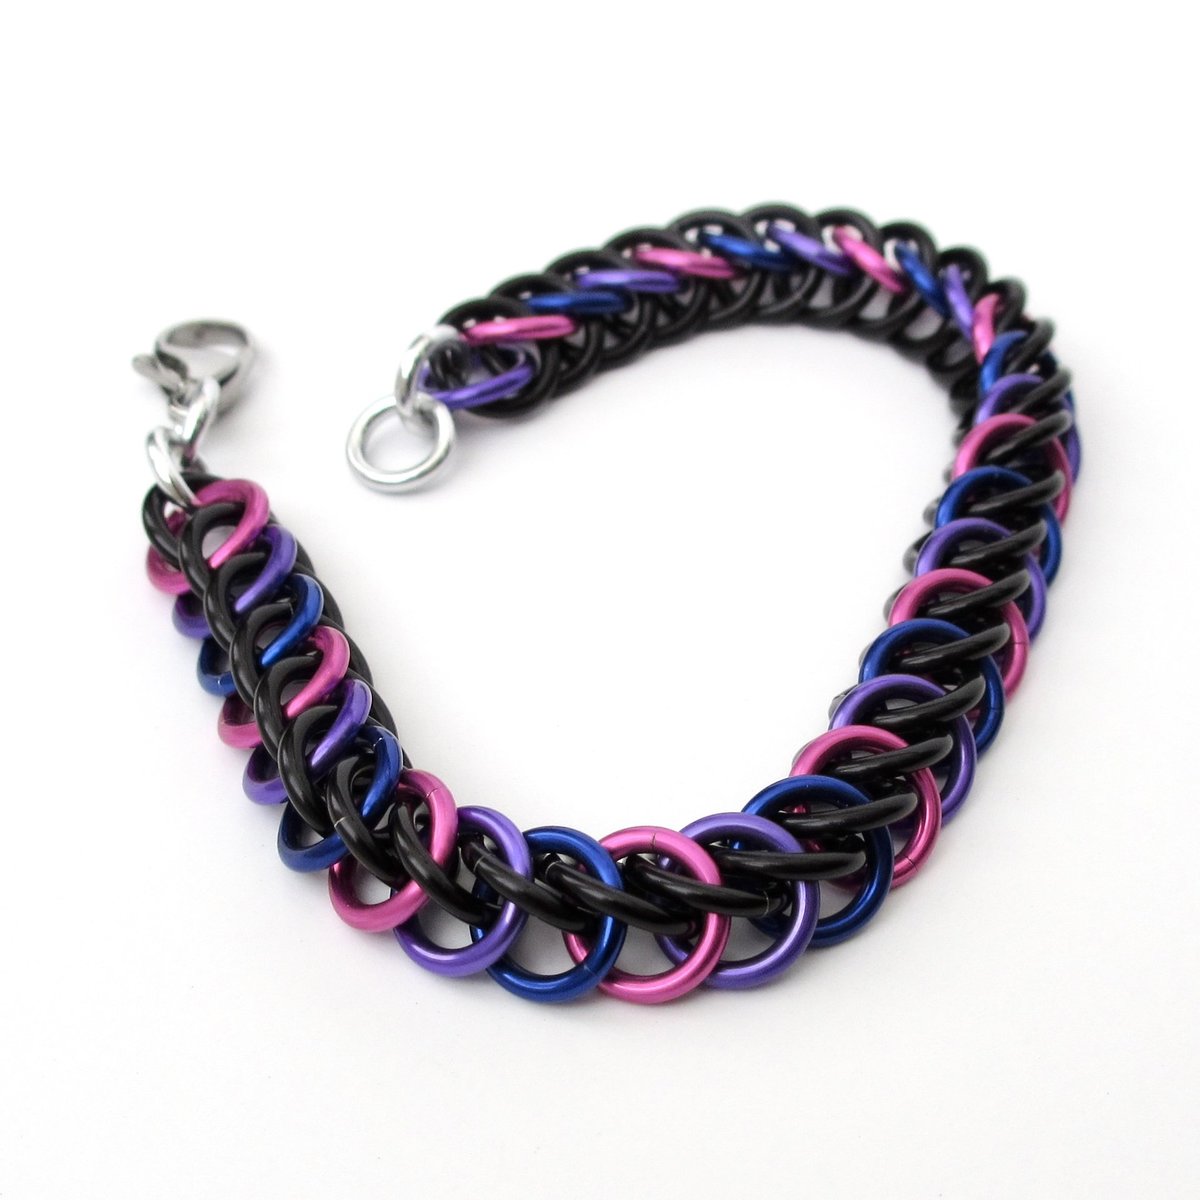 Bi pride bracelet, chainmail half Persian 3 in 1 weave, bisexual pride jewelry